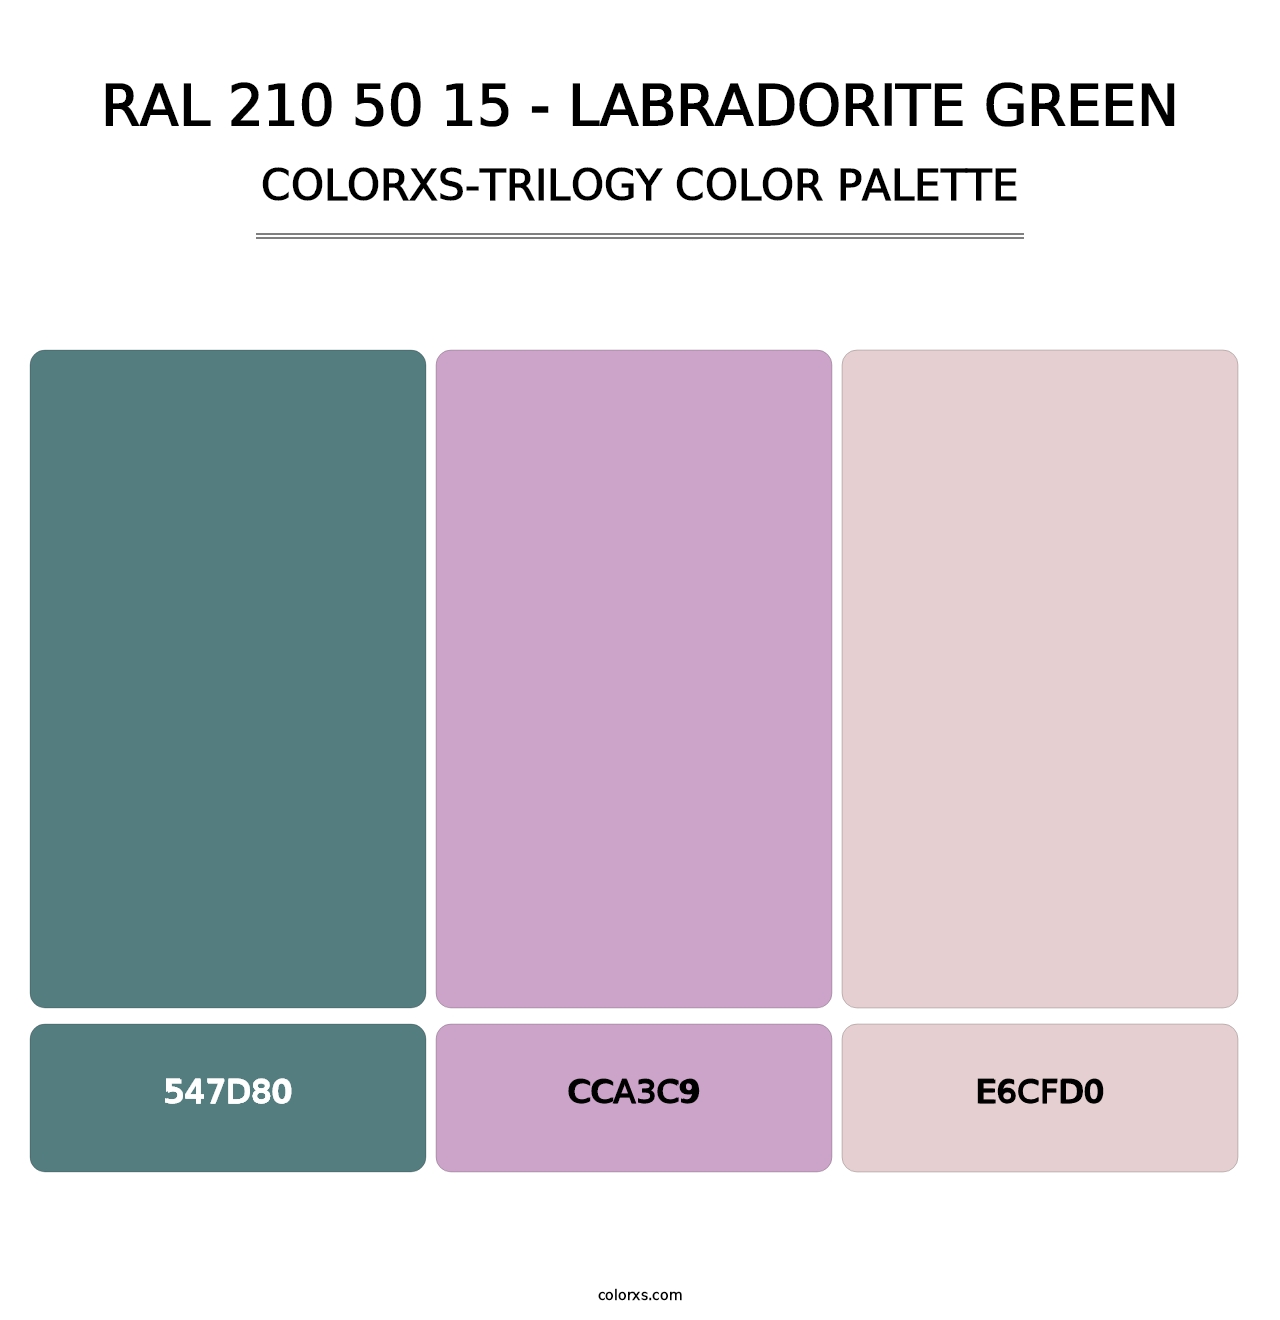 RAL 210 50 15 - Labradorite Green - Colorxs Trilogy Palette